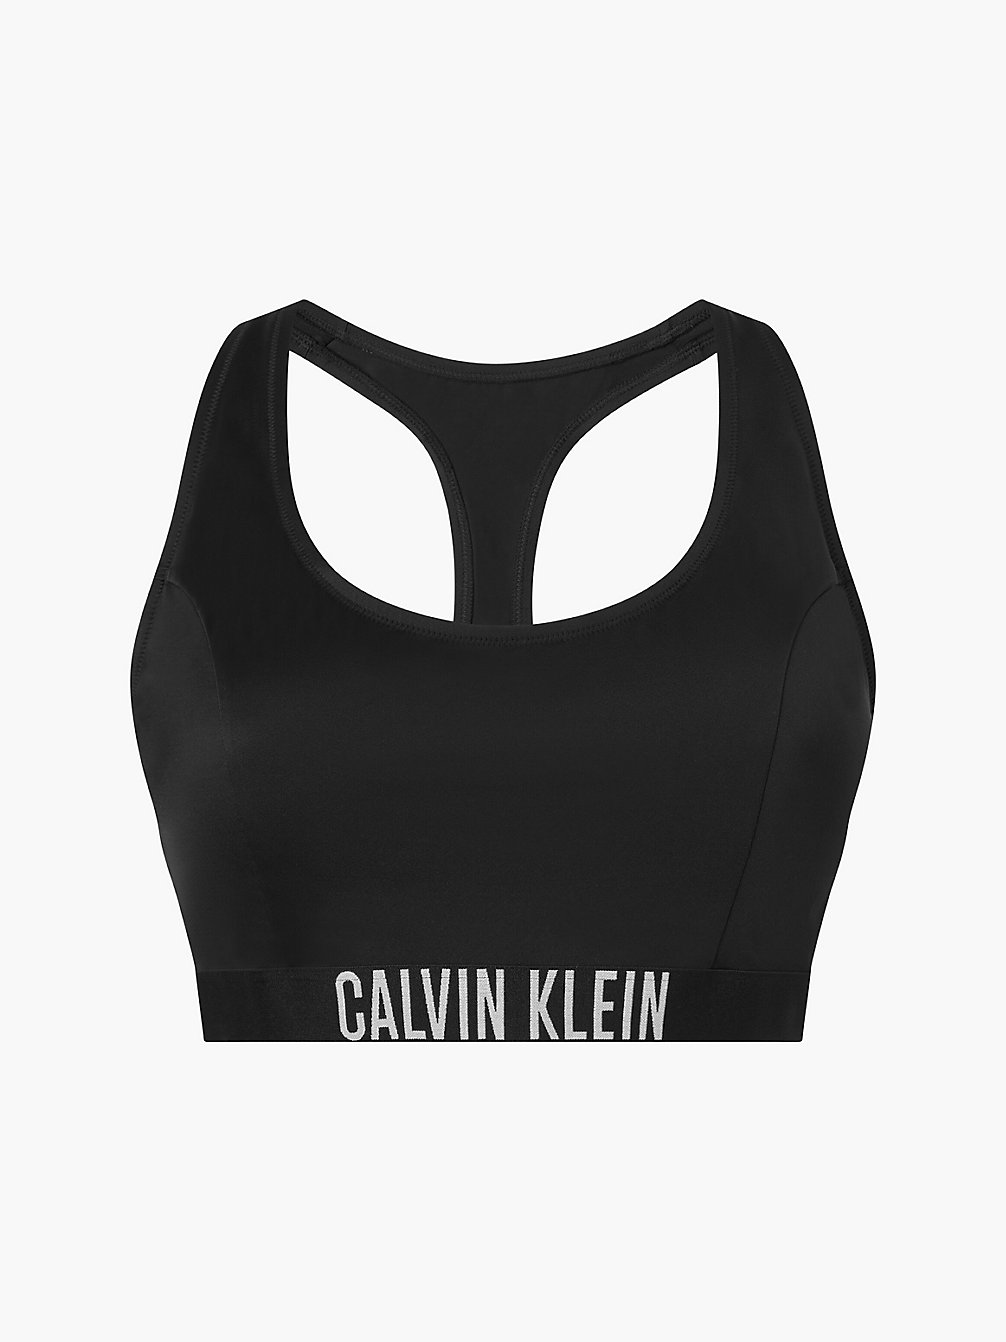 PVH BLACK Bralette Bikini-Top In Großen Größen - Intense Power undefined Damen Calvin Klein